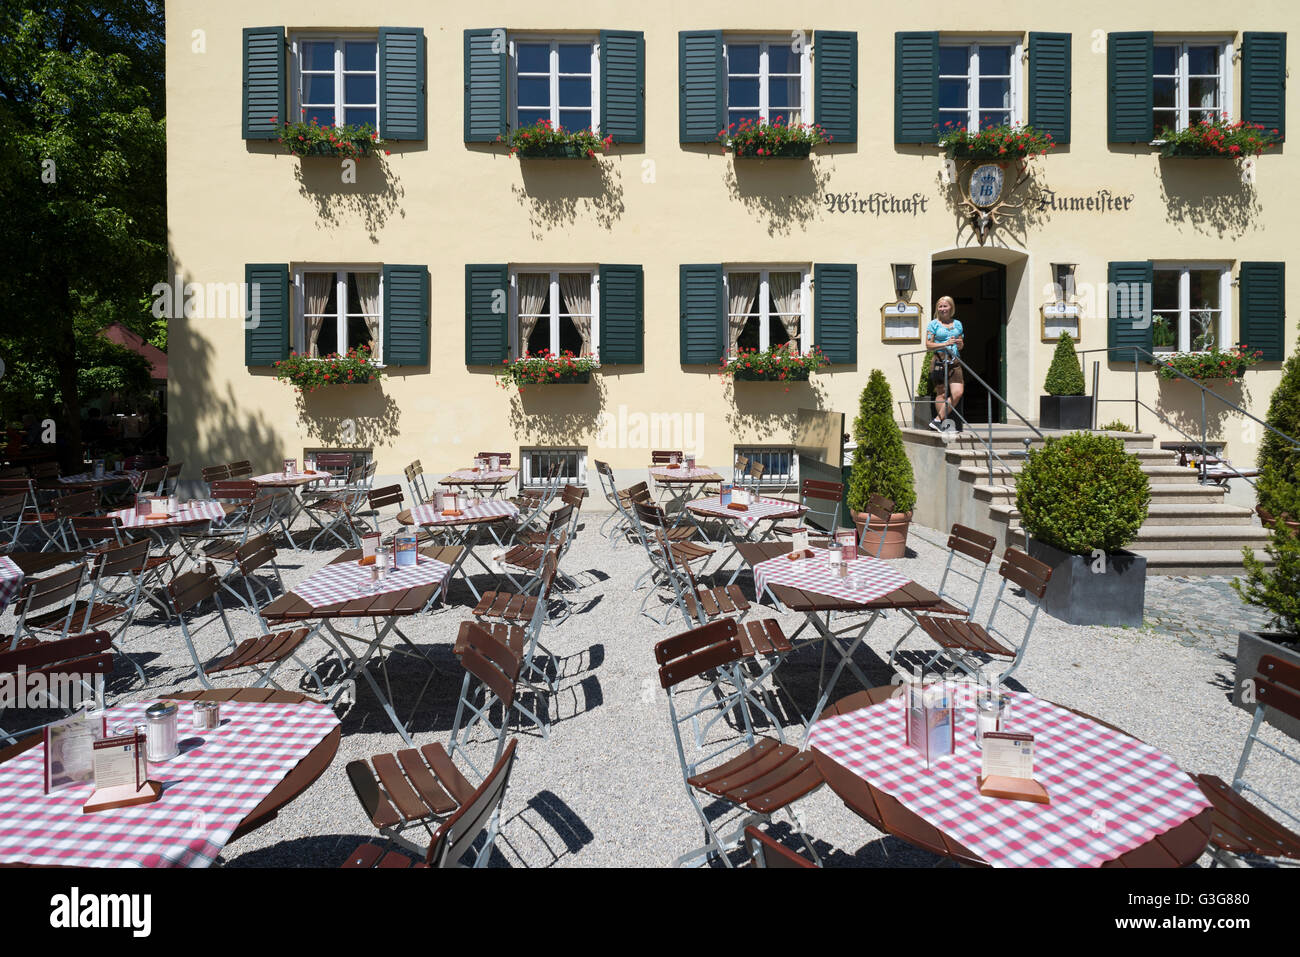 Tische, Stühle und eine Kellnerin vor der Fassade des Restaurant Aumeister im englischen Garten in München, Bayern, Deutschland Stockfoto